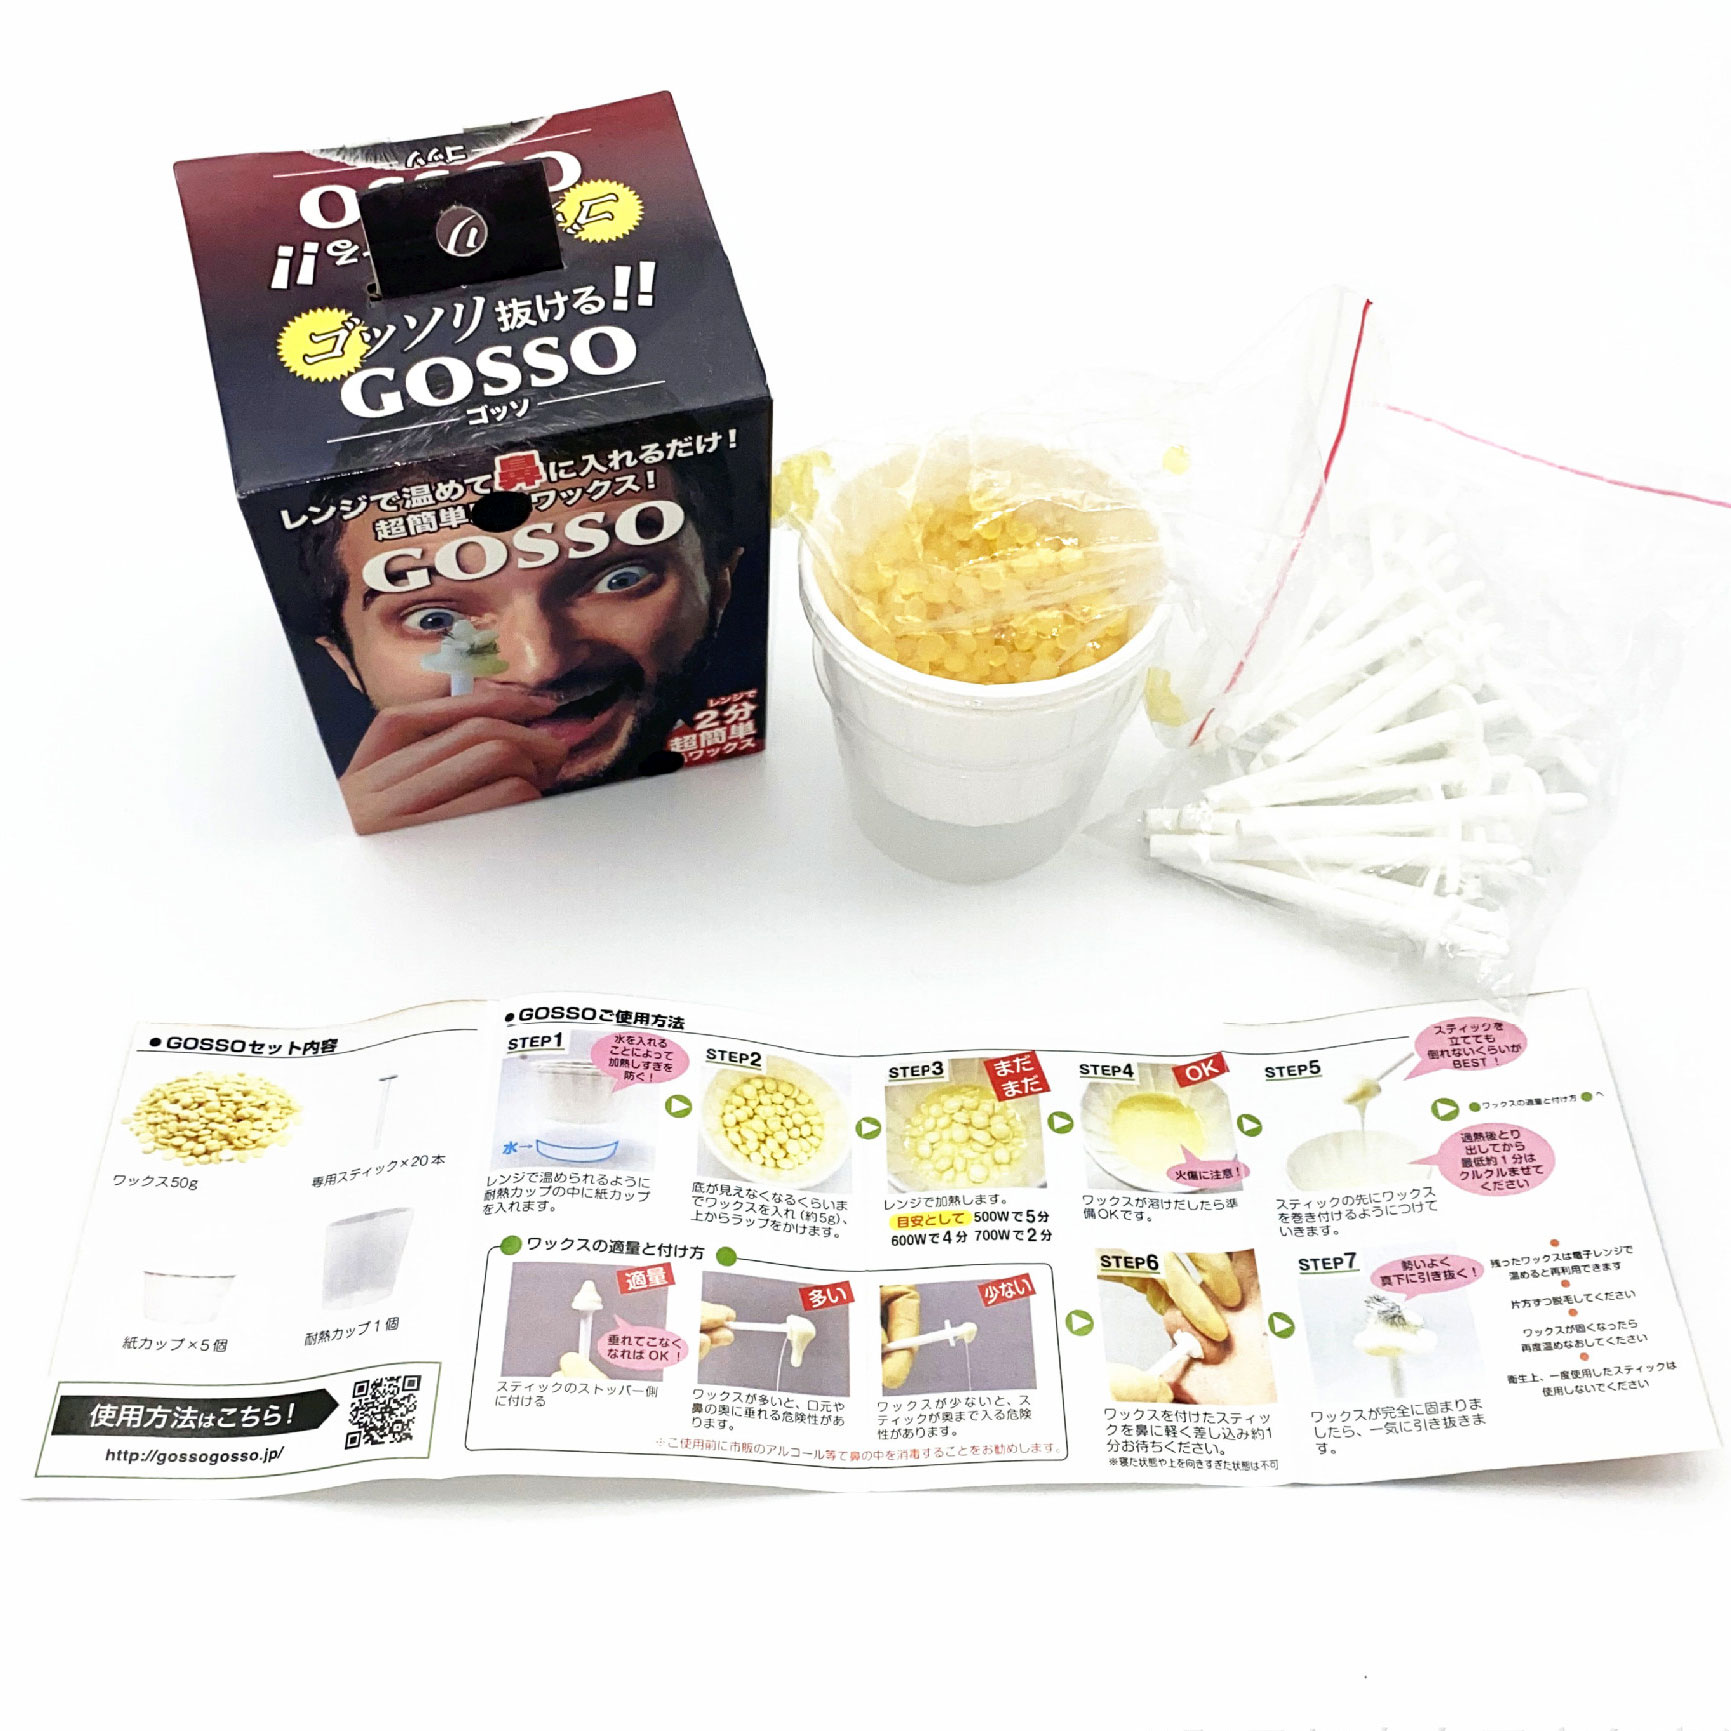 Buy Nose Wax Kit Online